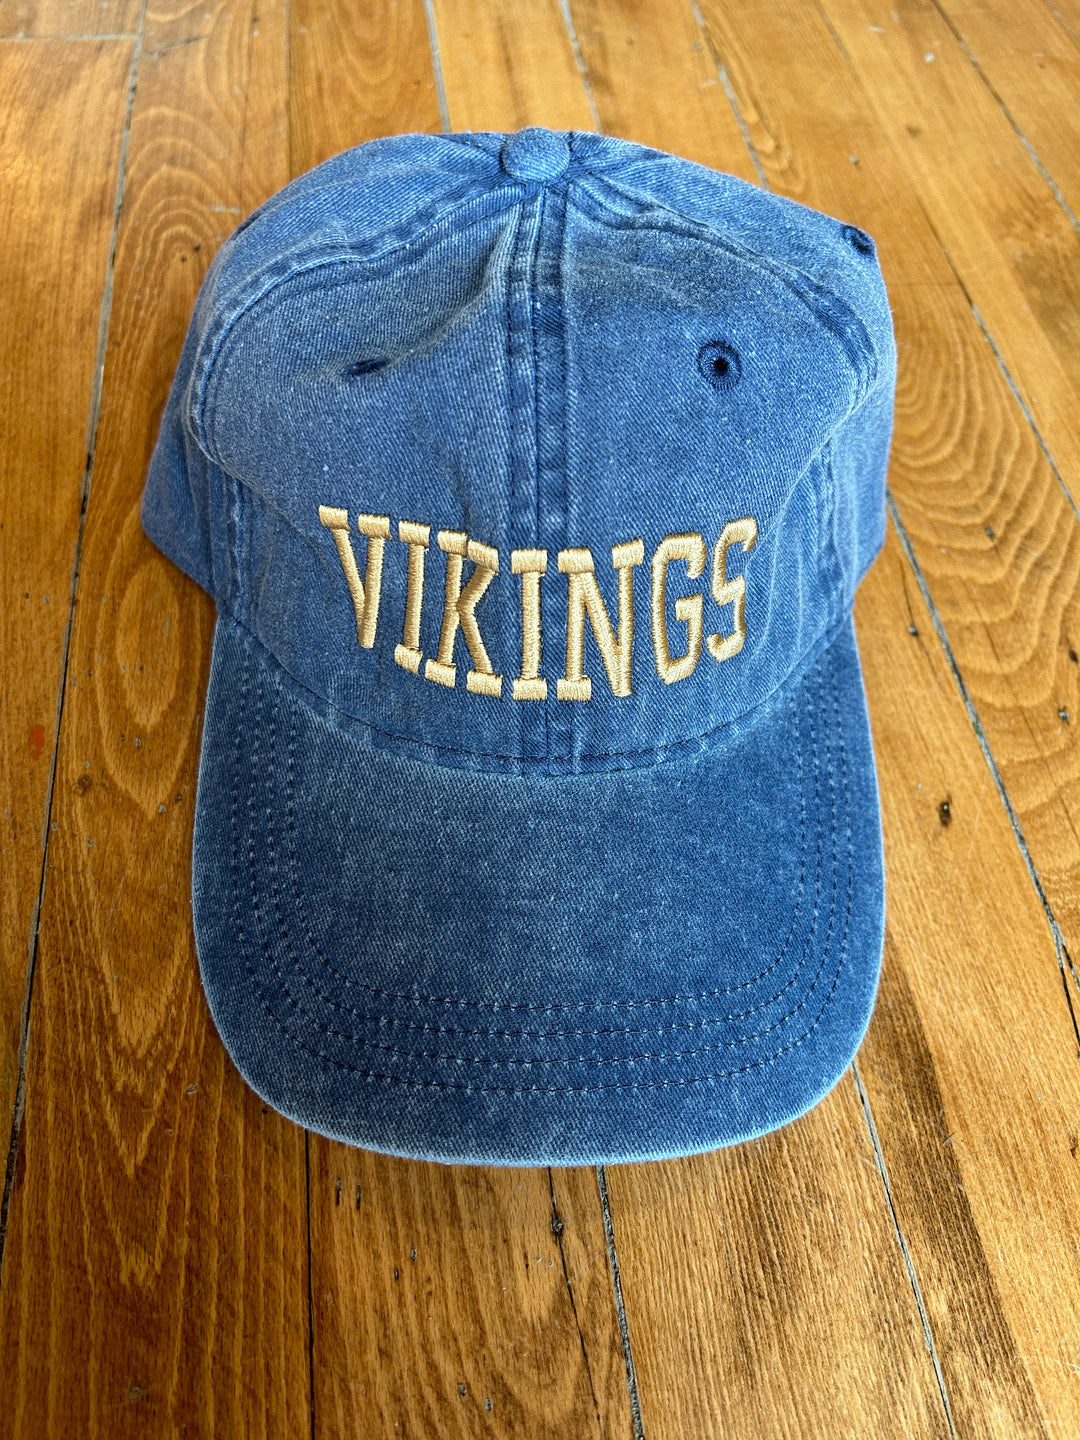 Viking Baseball Cap